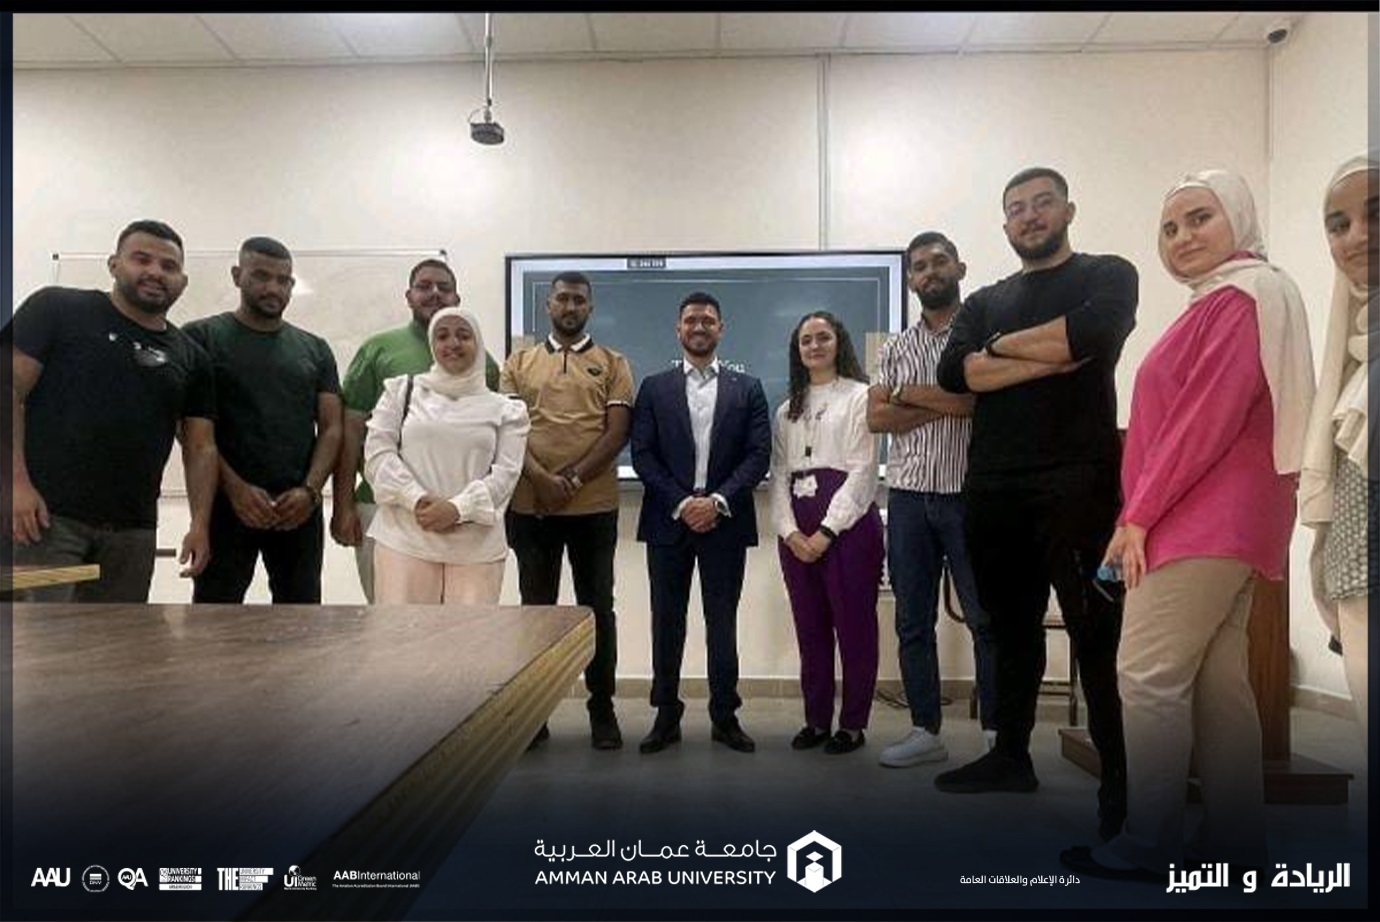 ورشة "المهارات الحياتية في الحياة العملية" لطلبة جامعة عمان العربية